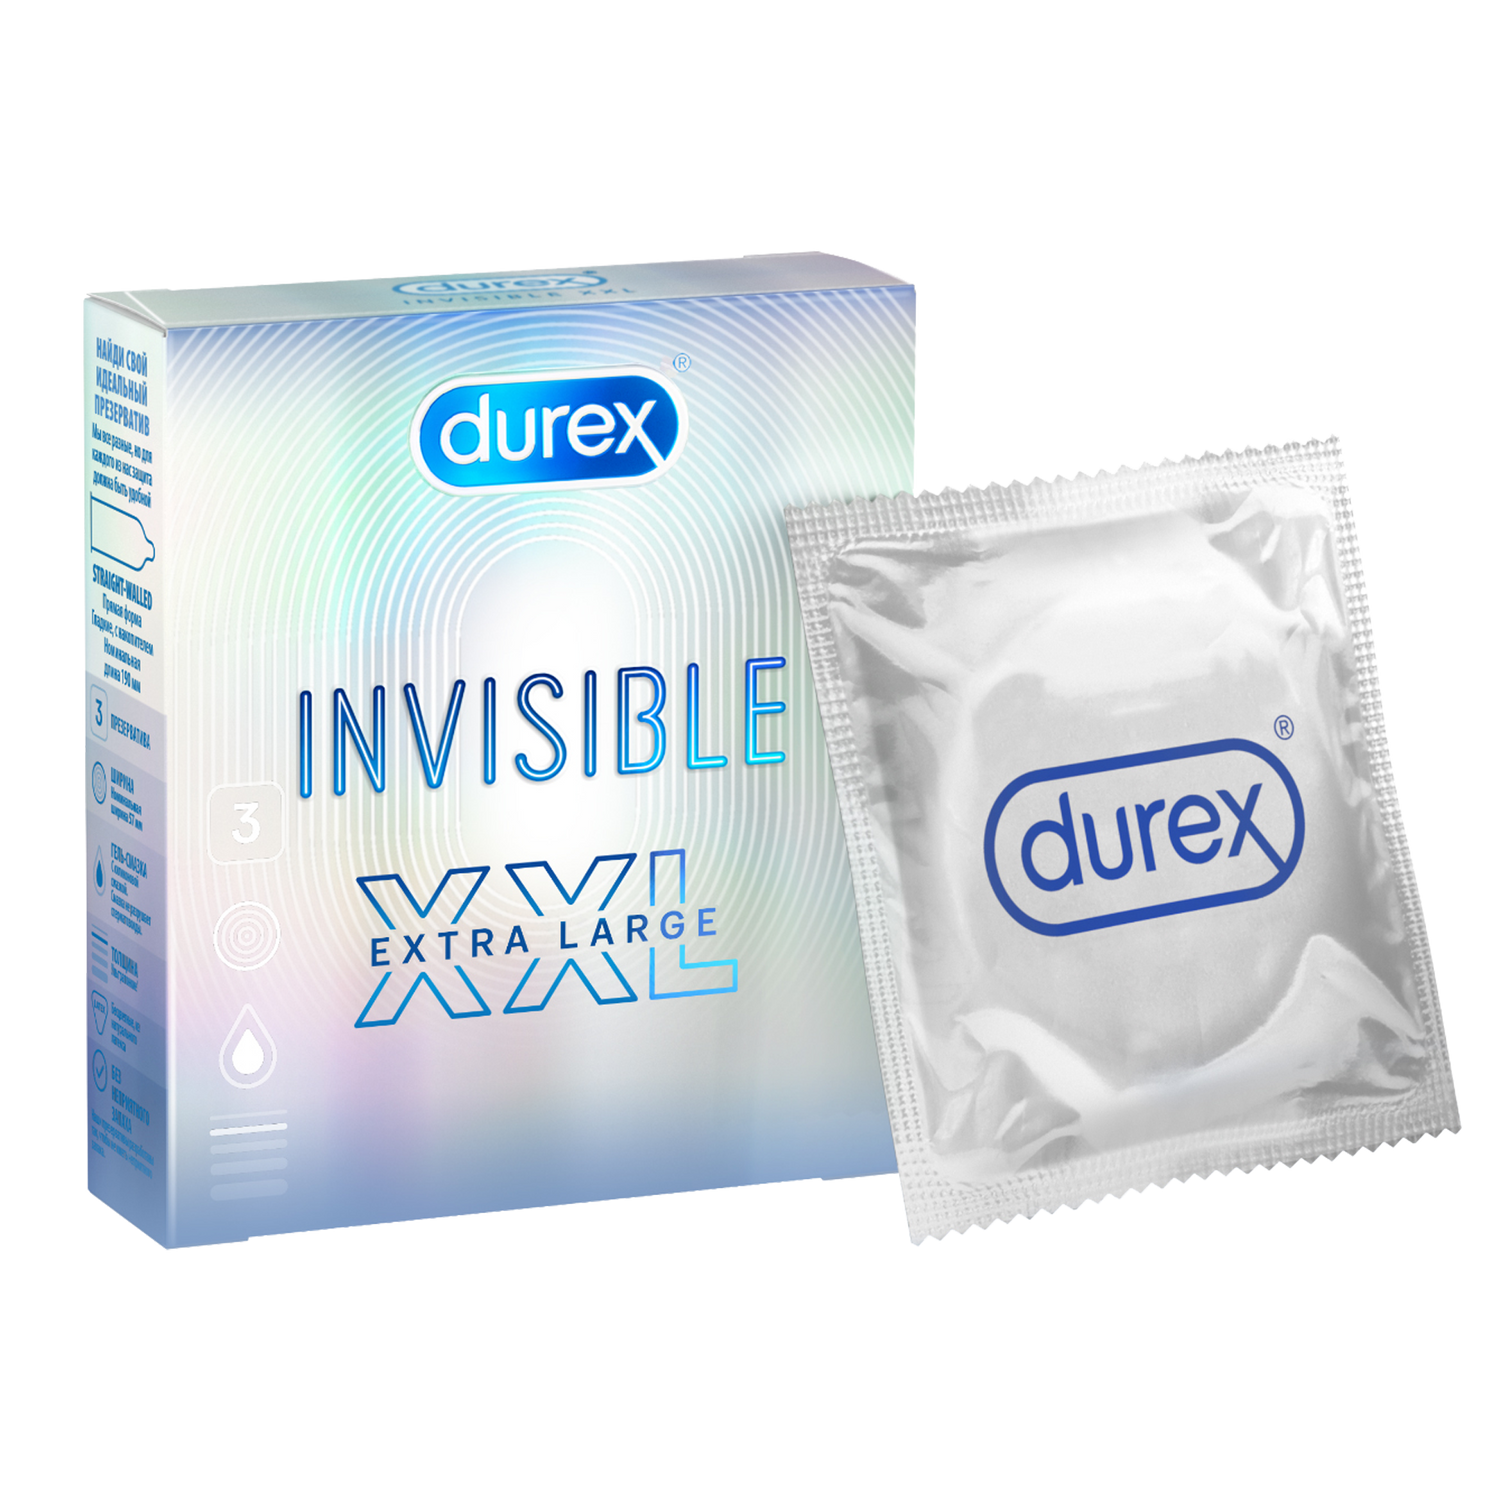 Durex Invisible XXL, презервативы, 3 шт. правда о деле гарри квеберта